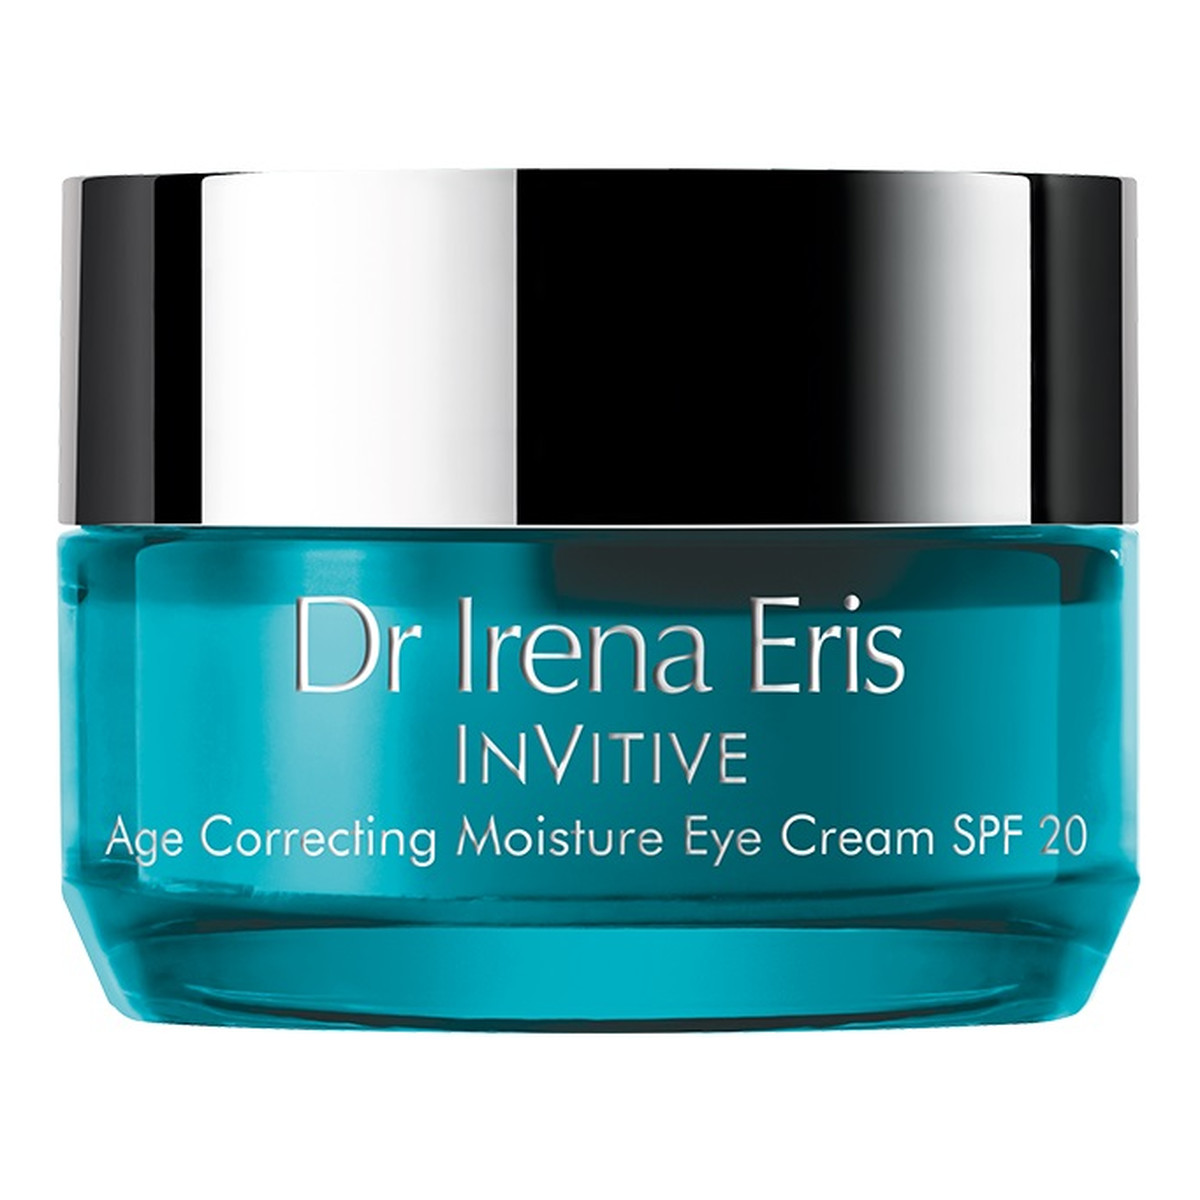 Dr Irena Eris InVitive Age Correcting Moisture Eye Cream odmładzający krem nawilżający pod oczy SPF20 15ml